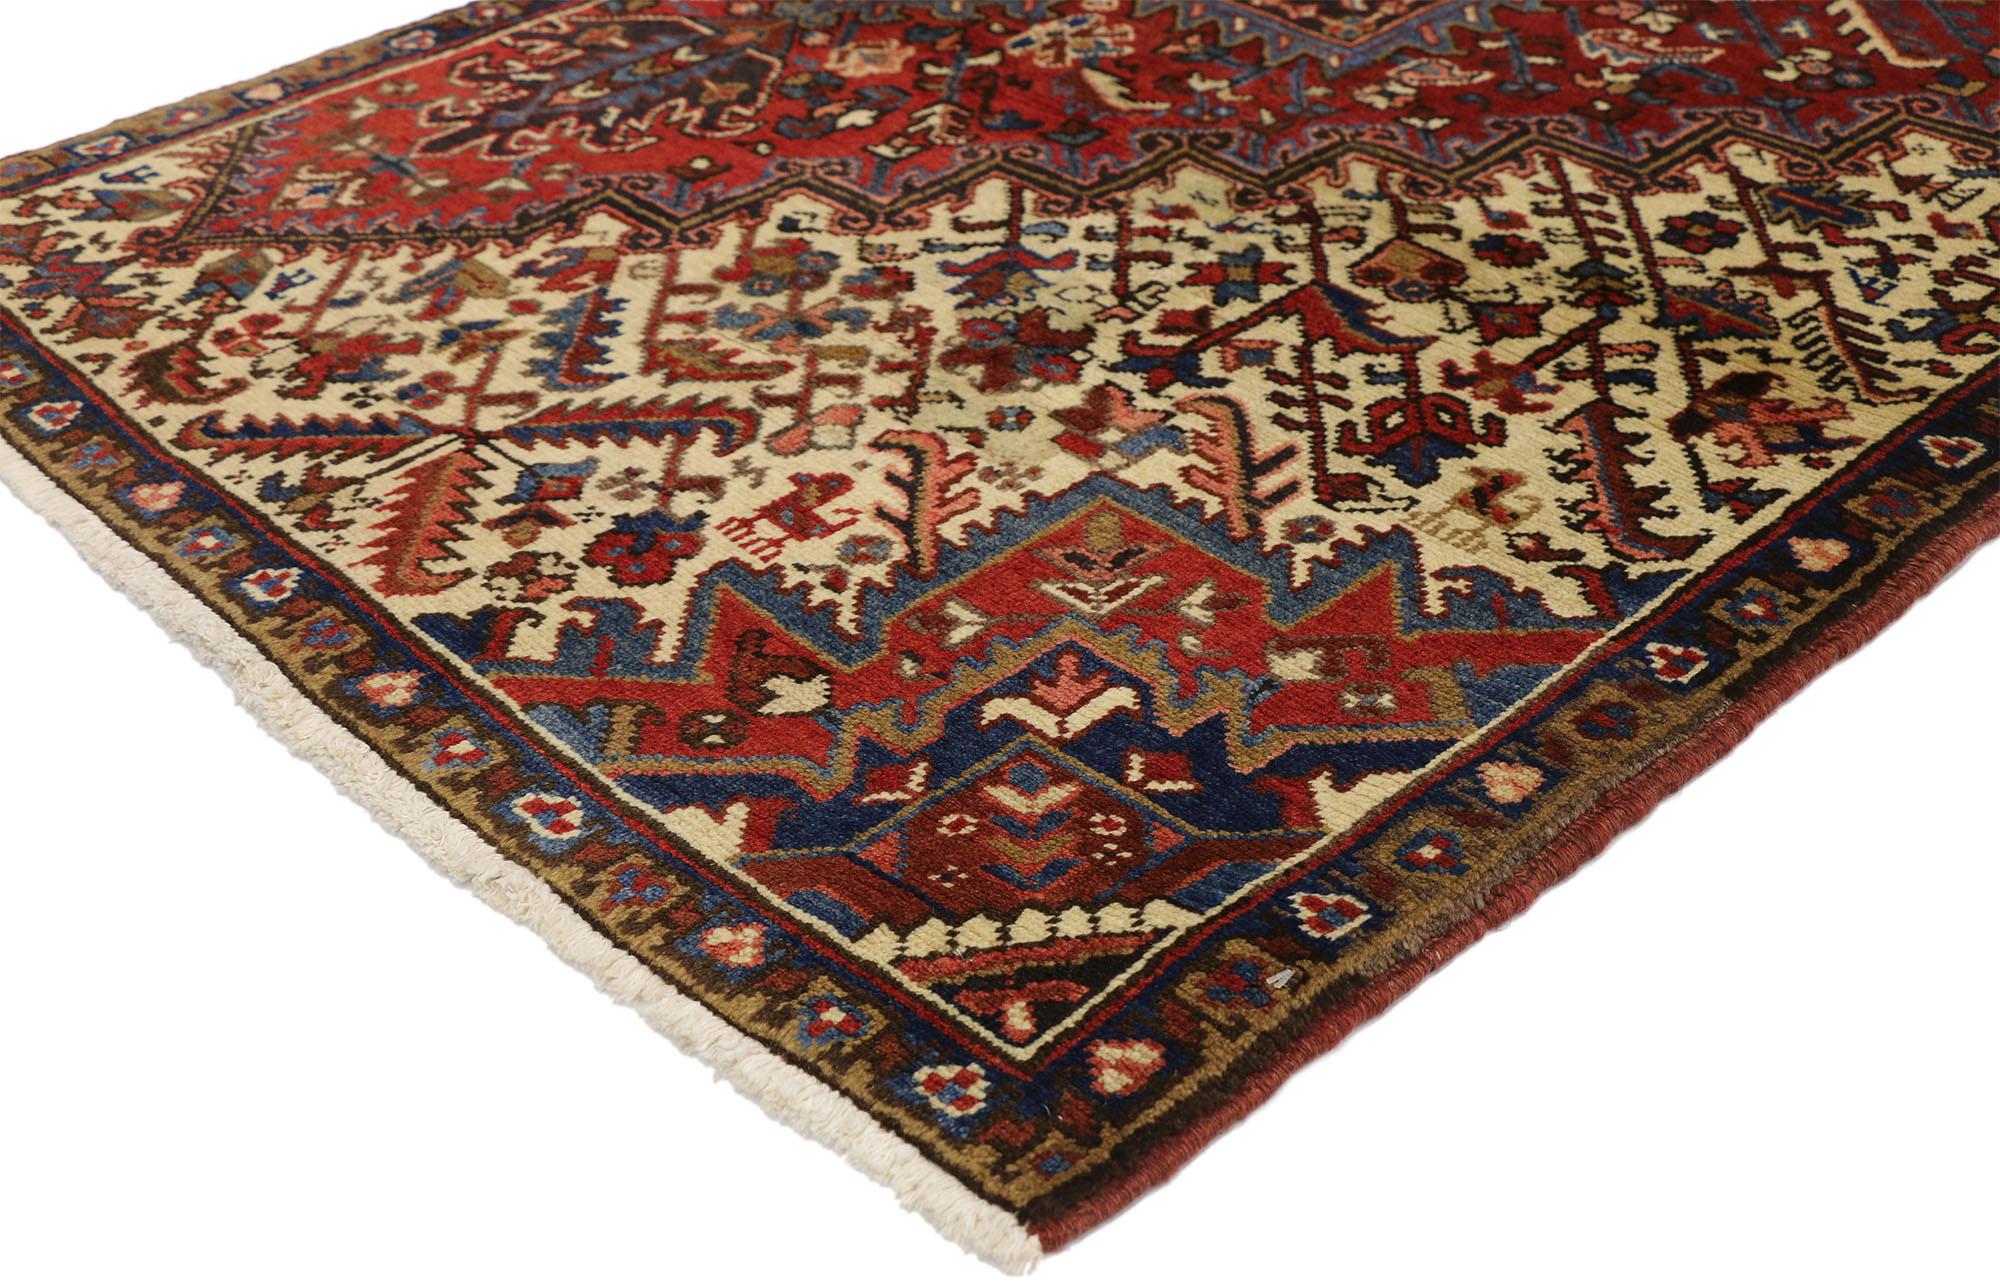 76428 Tapis persan vintage Heriz avec style traditionnel et moderne, tapis Wagireh 03'03 x 04'01. Ce tapis Heriz vintage en laine noué à la main présente un style traditionnel moderne, mais il a été créé pour montrer les variations des motifs, des